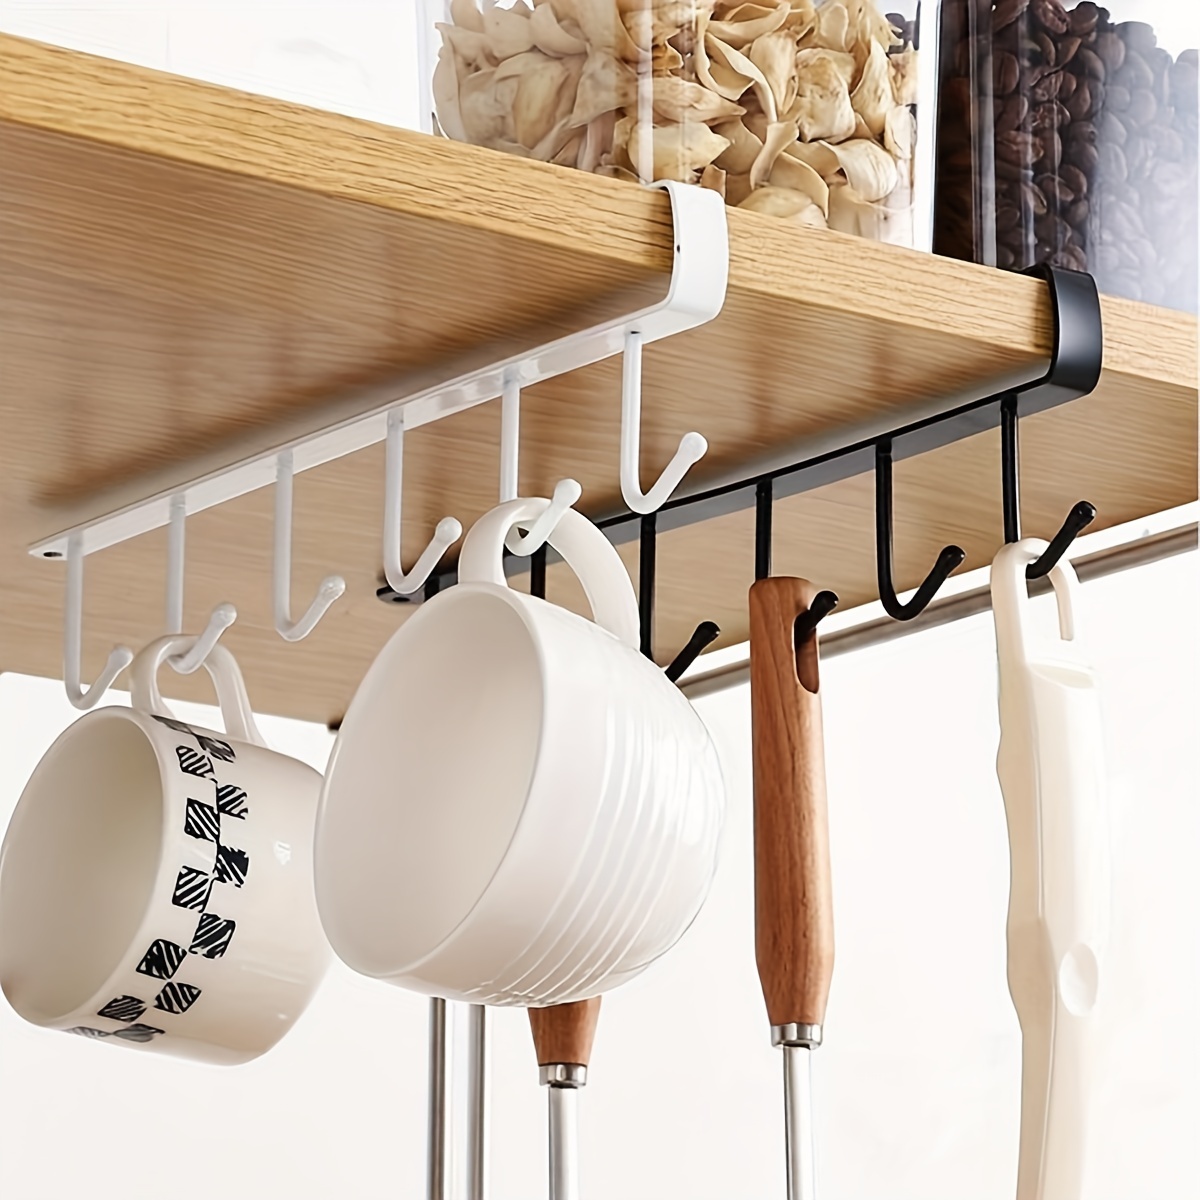 6 Hooks Cup Holder Hang Kitchen Cabinet Under Shelf Storage Rack